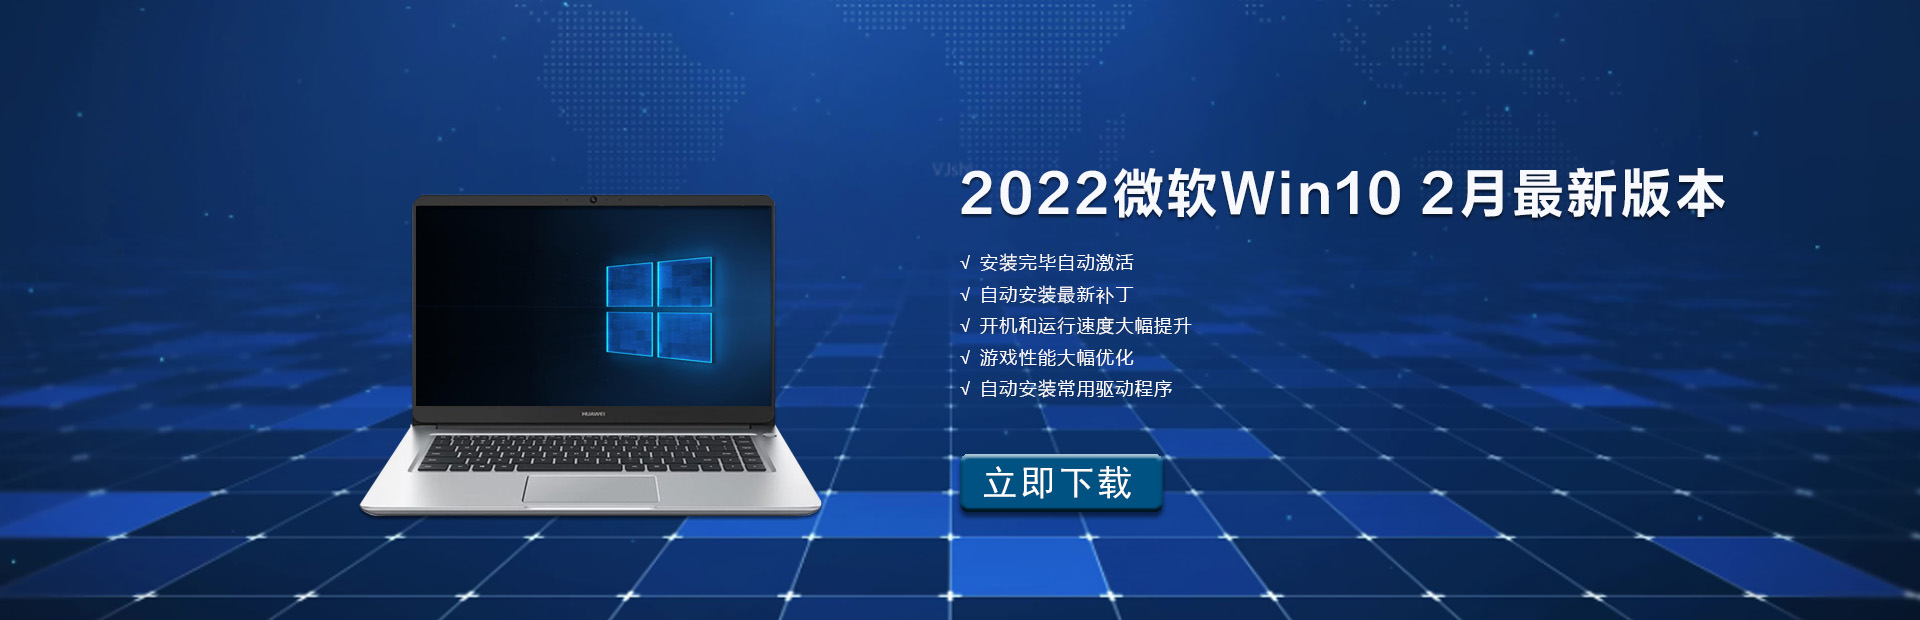 2022微软Win10 2月最新版本下载